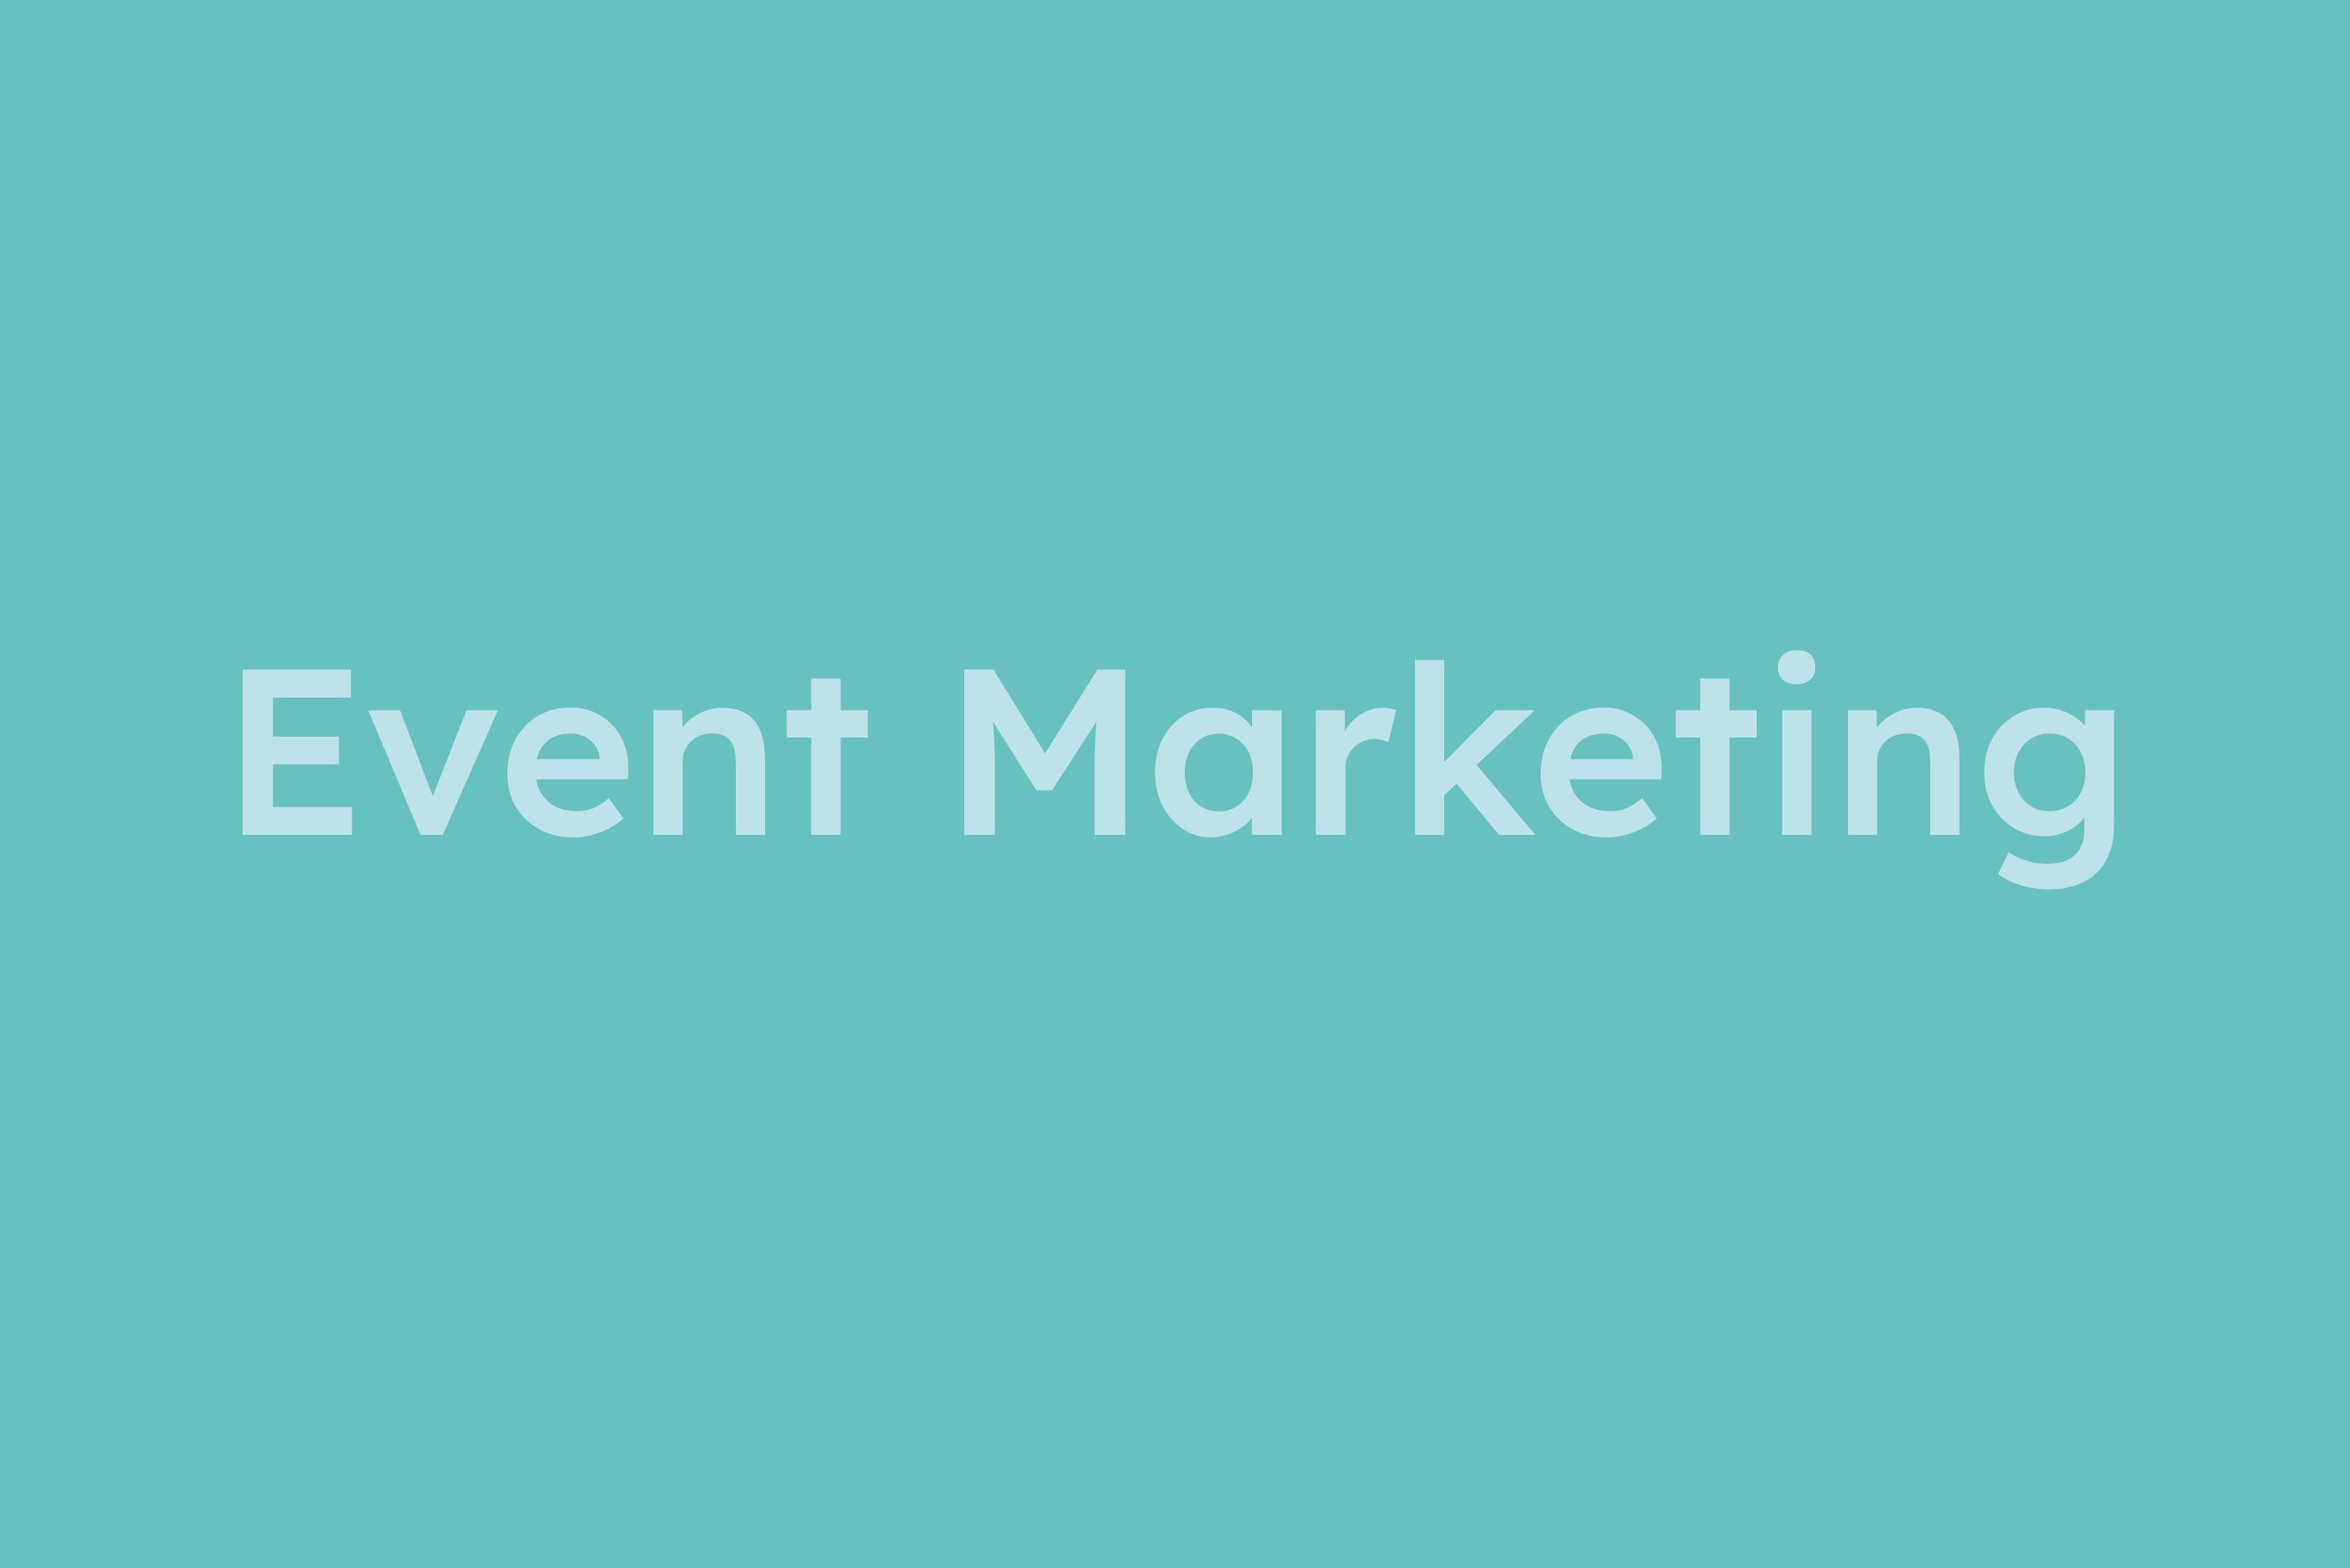 Event Marketing erklärt im Glossar von Campaign